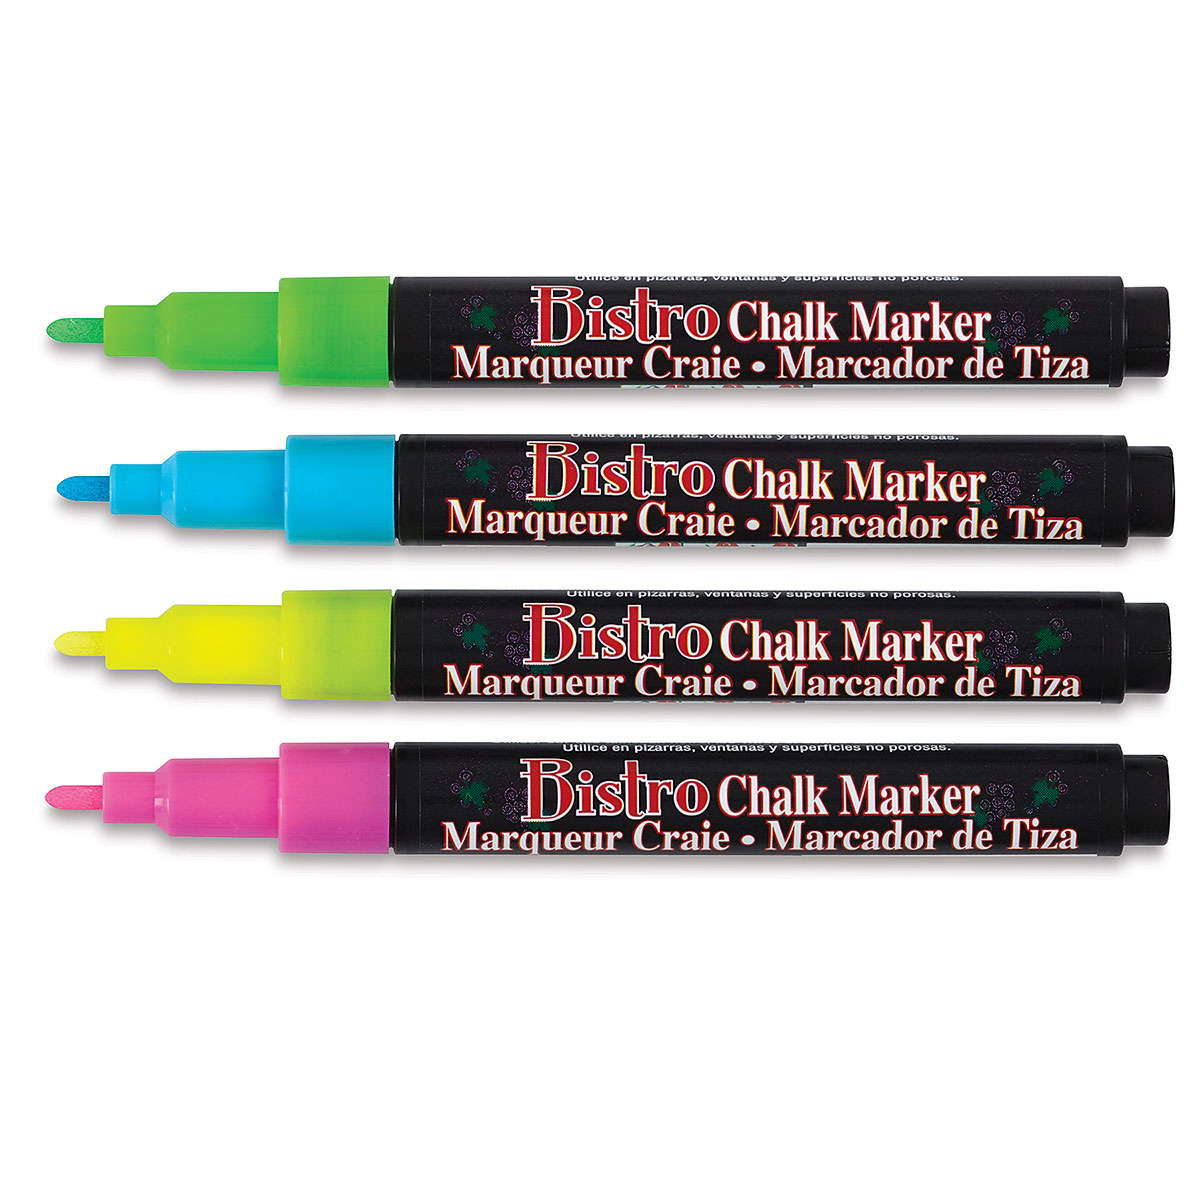 Bistro Chalk Marker - Fine (3mm) Black